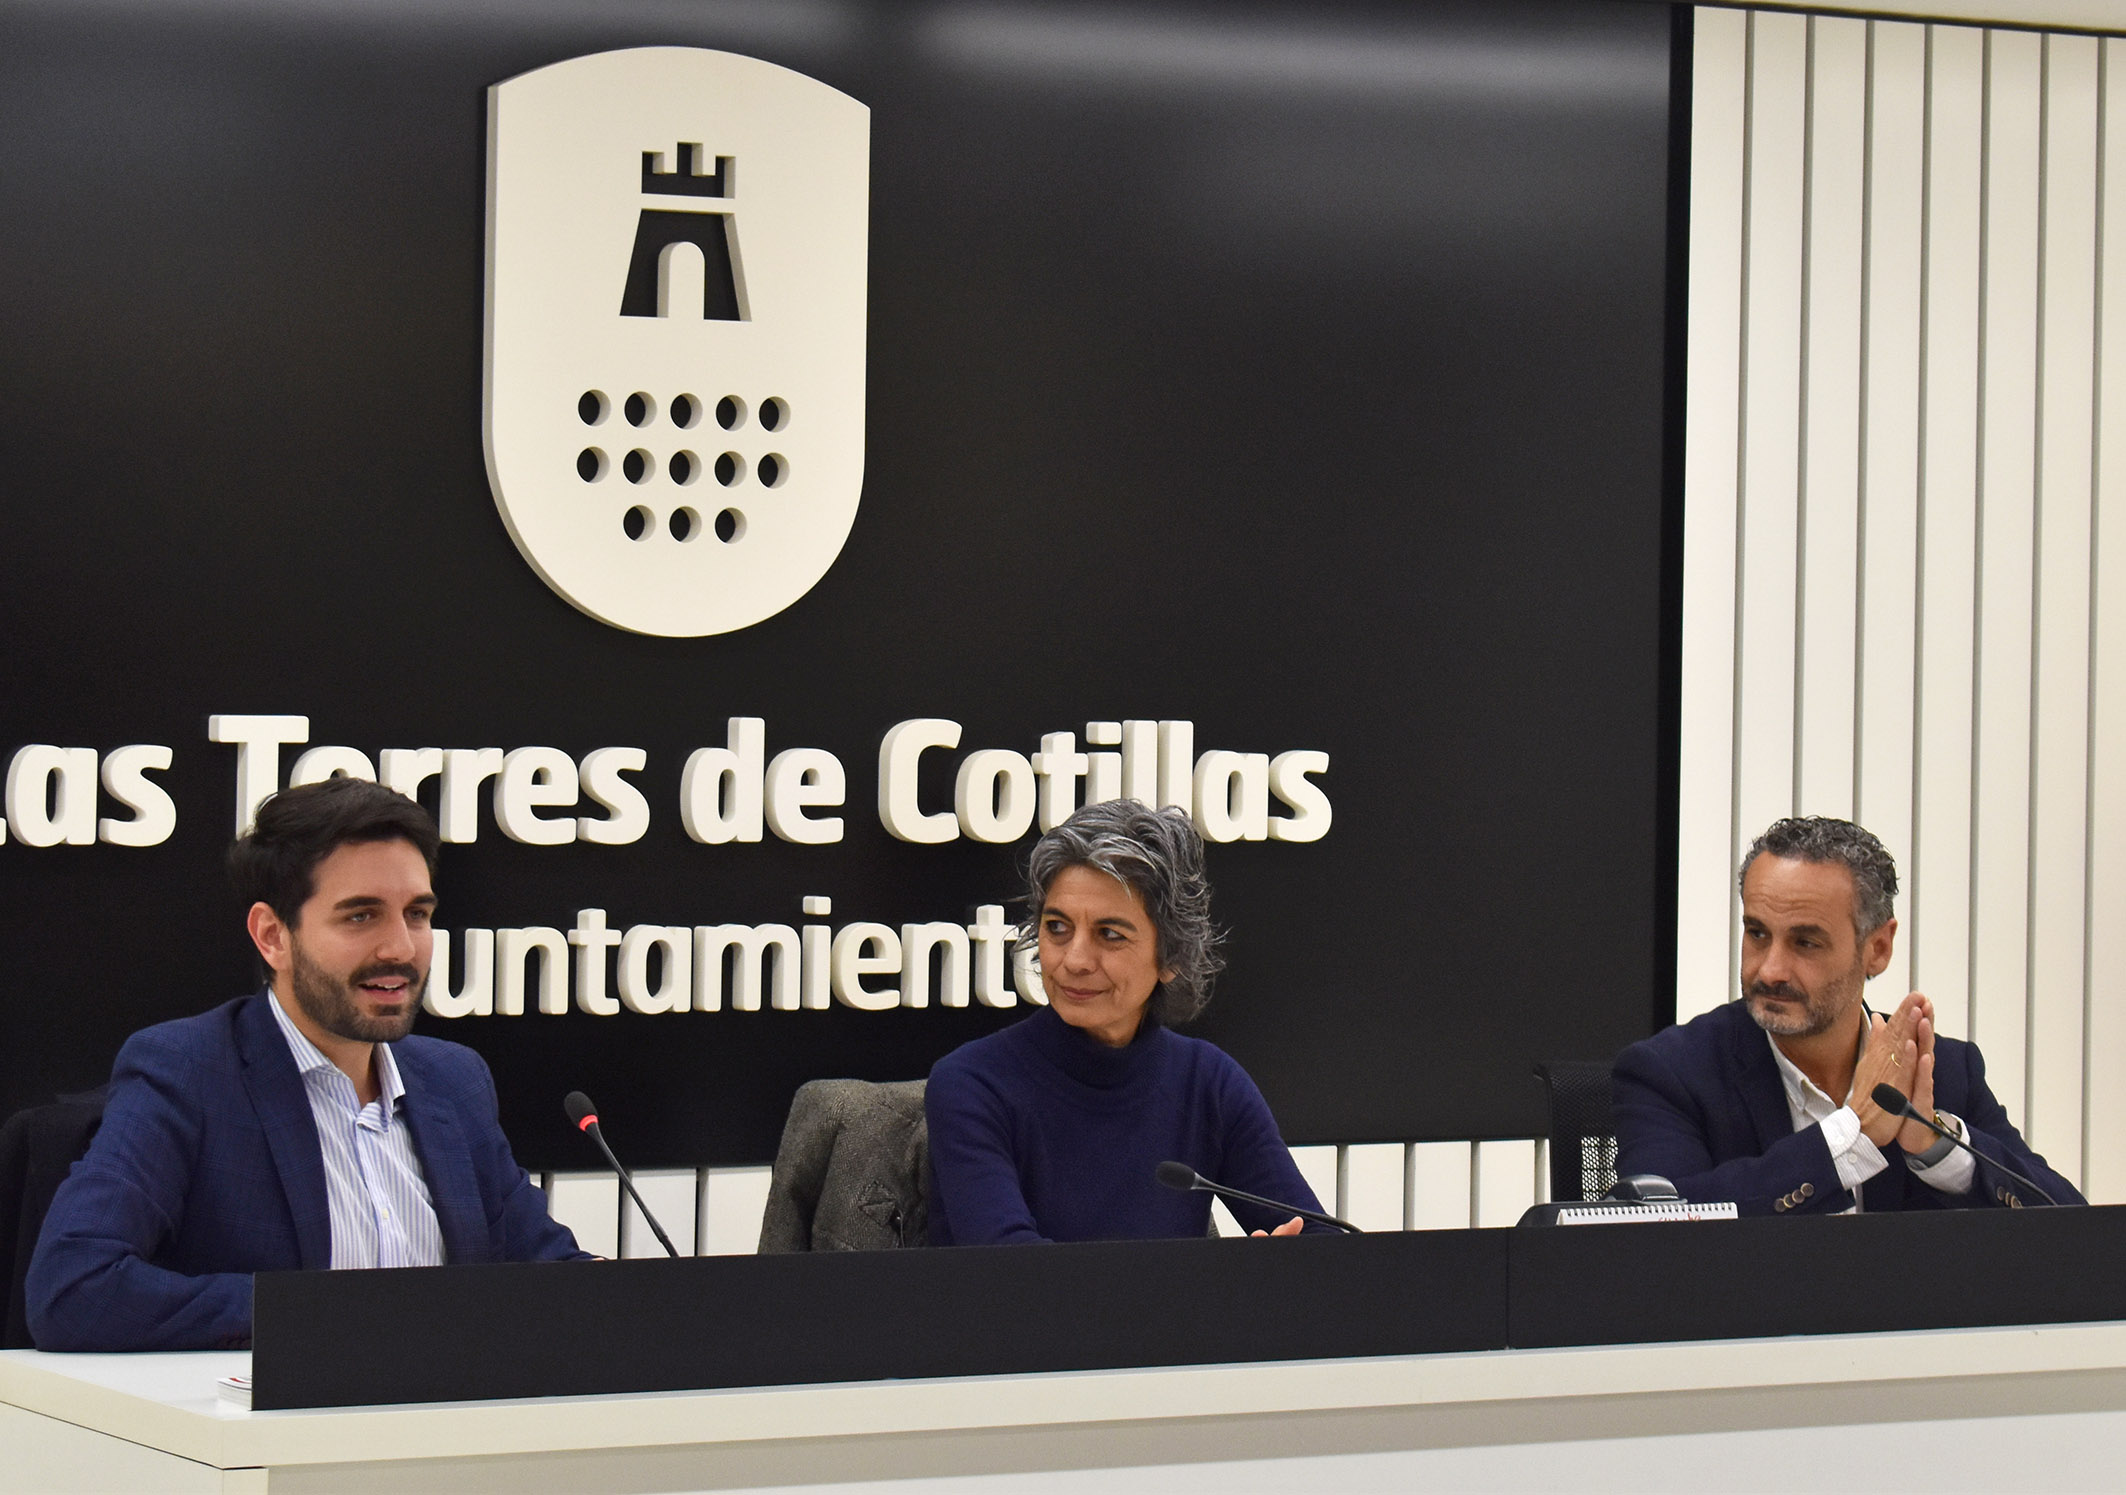 La escritora María López Mayol presenta en Las Torres de Cotillas su libro “Vivir en modo caballo” 